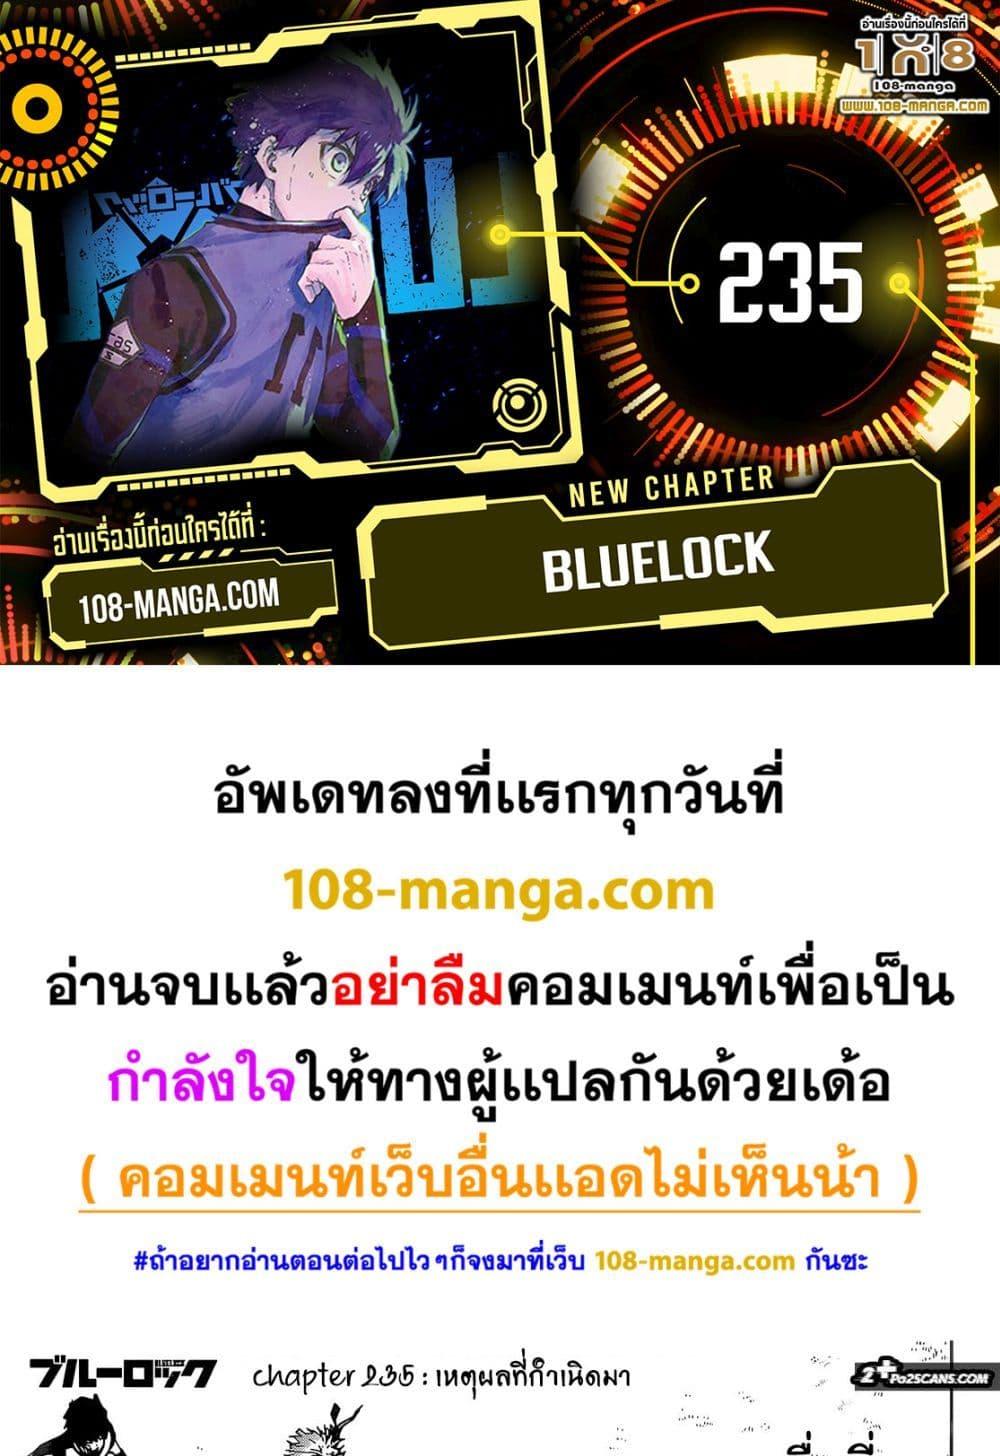 Blue Lock ตอนที่ 235 (1)